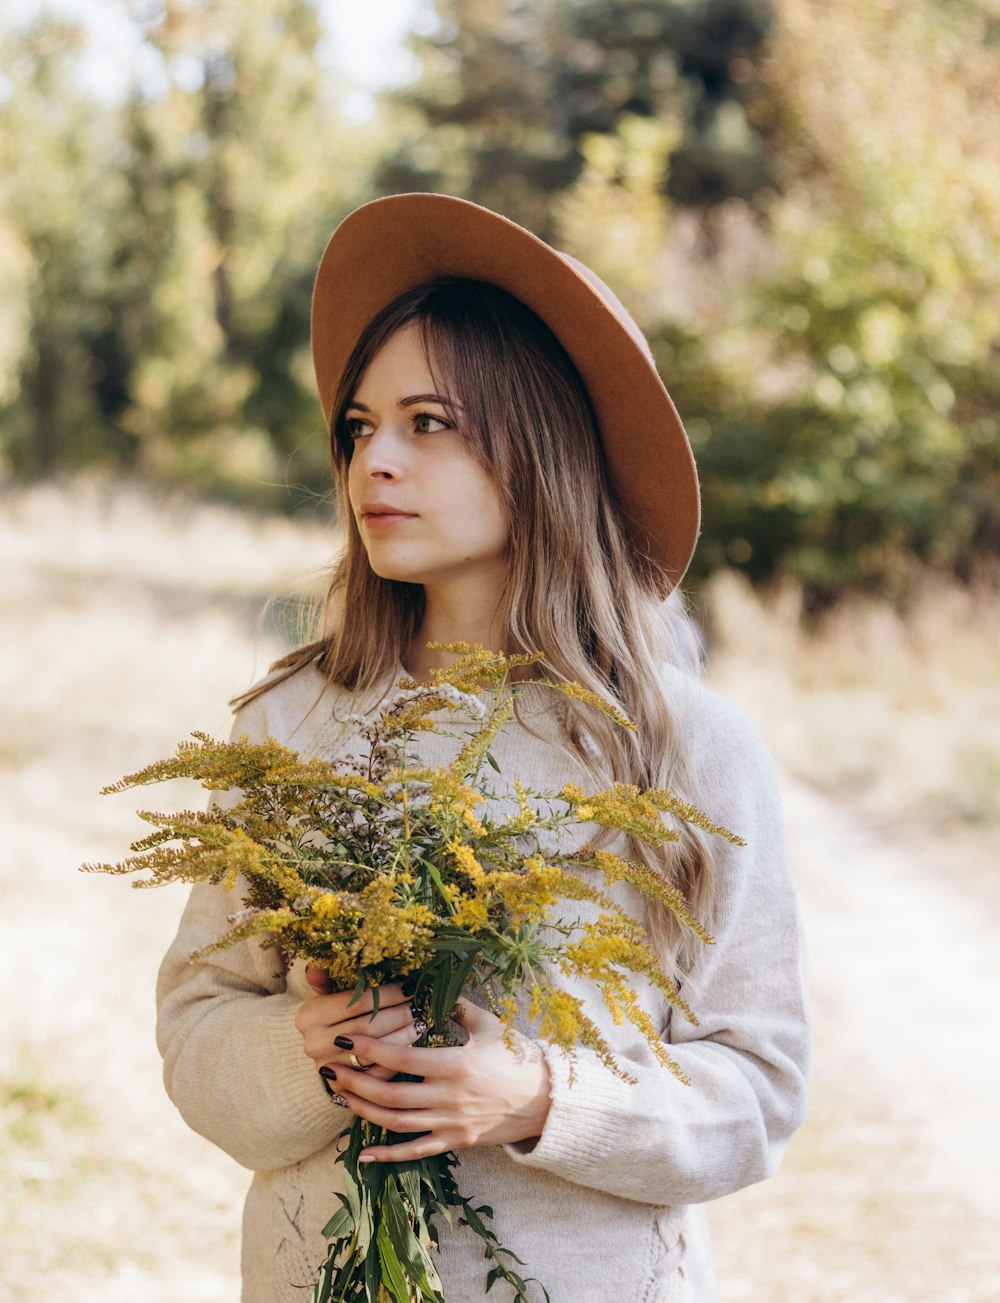 Una mujer con un sombrero sosteniendo un ramo de flores